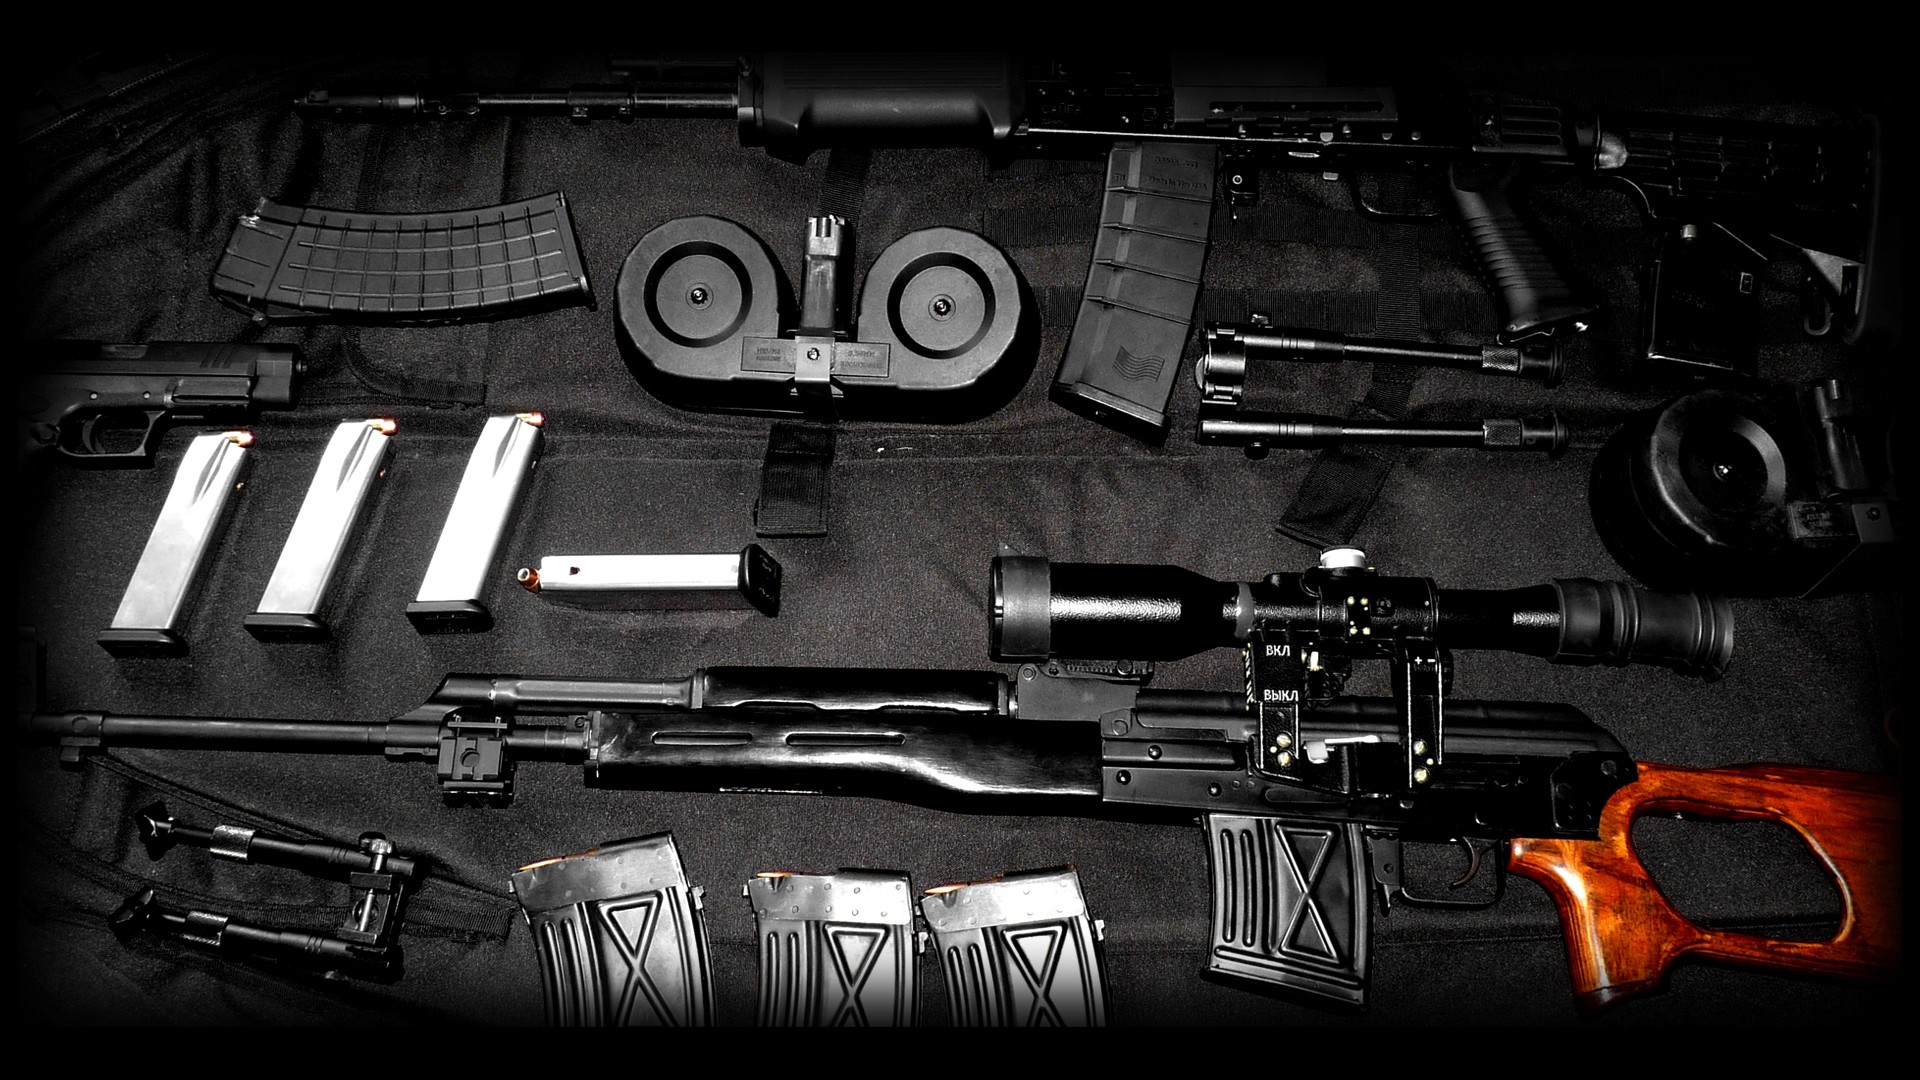 1920x1080 machine gun wallpapers, desktop wallpaper Â» GoodWP. | Guns | Pinterest |  Guns and Weapons